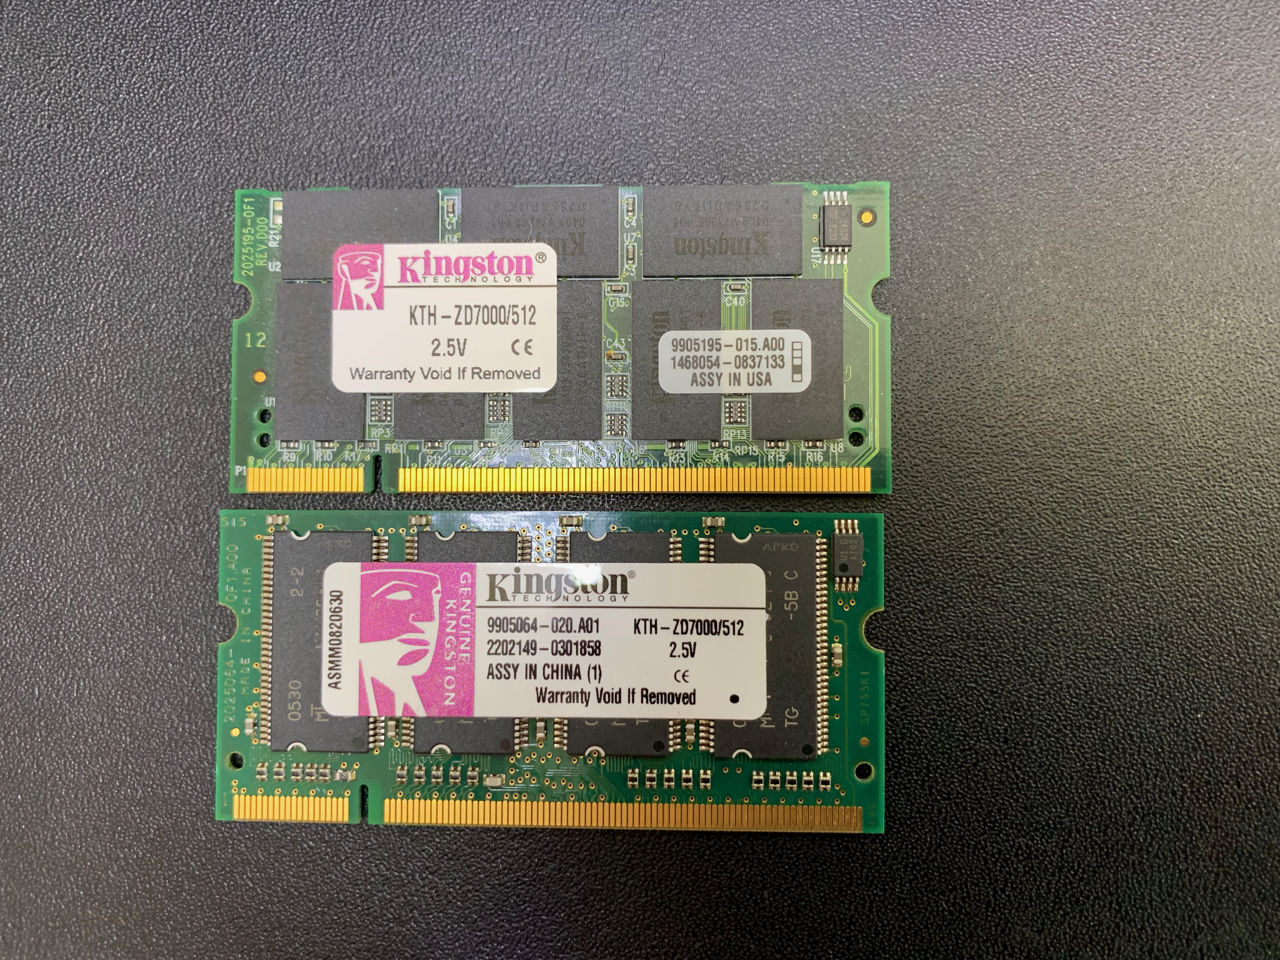 2x RAM MEMORY: Kingston 512MB KTH-ZD7000/512 - PC2700 DDR1 333 - SODIMM | Apple